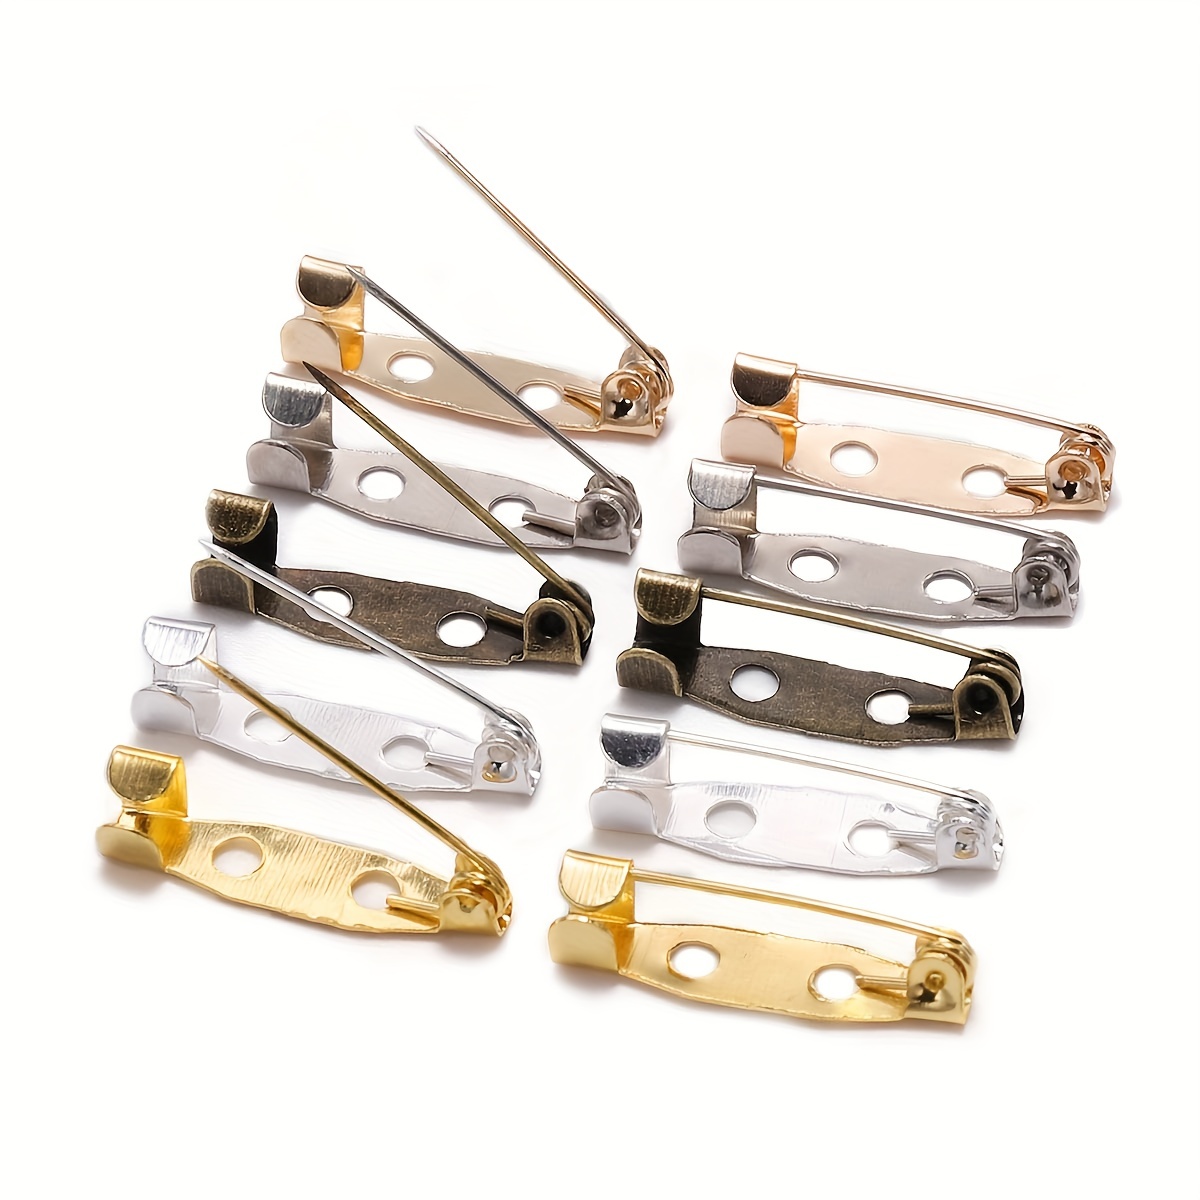 Broche clip con base para hacer broches, cabuchones y manualidades